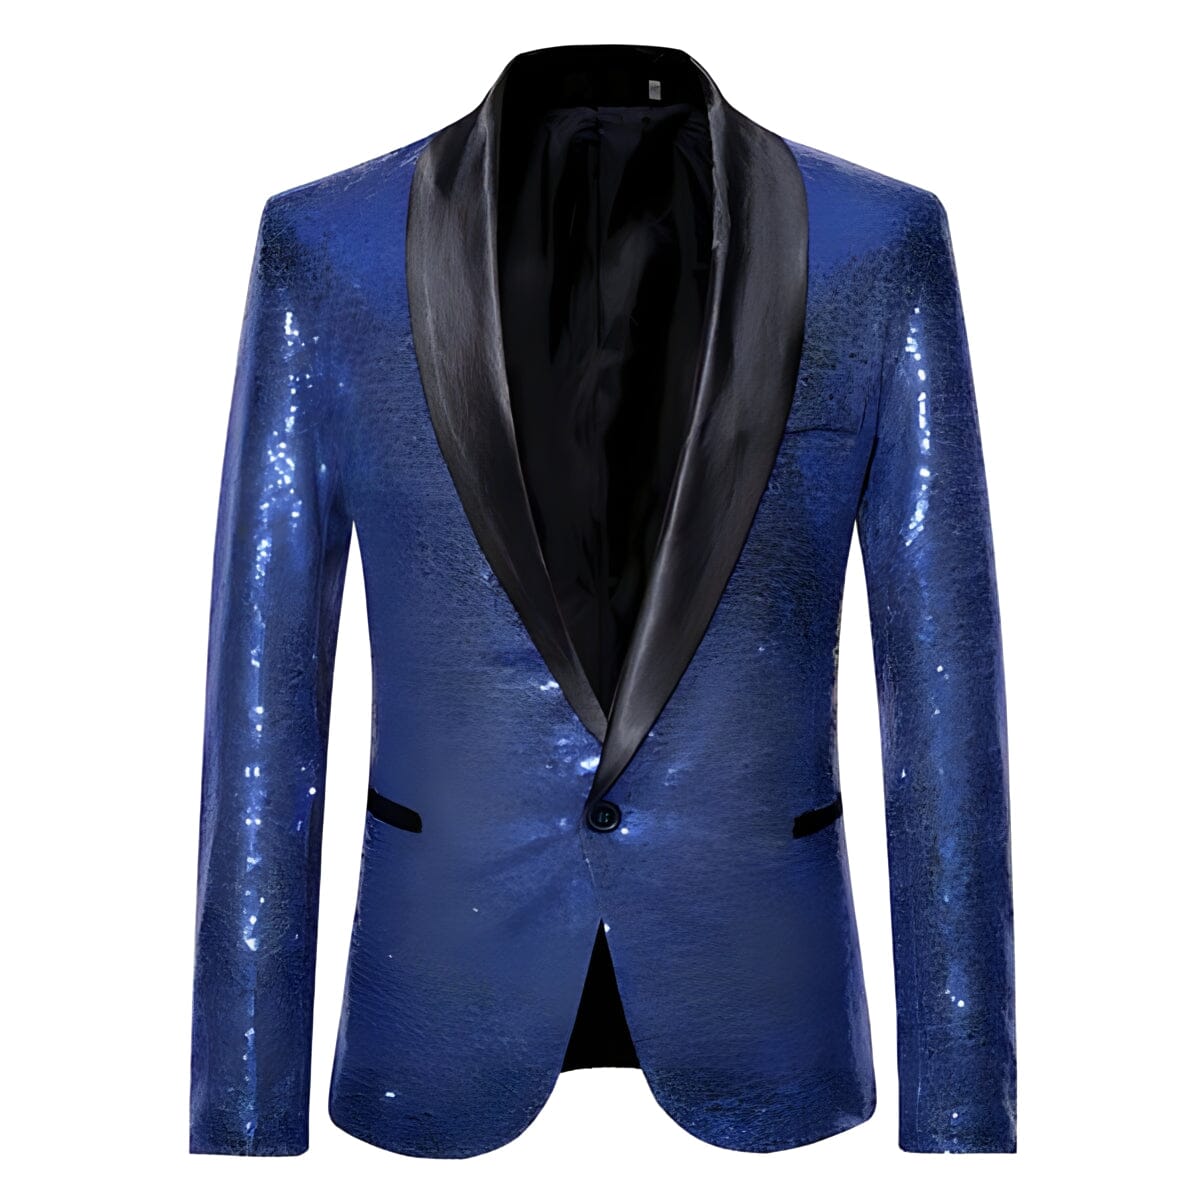 The Crystal Slim Fit Blazer Suit Jacket - Sapphire Blue Shop5798684 Store S 